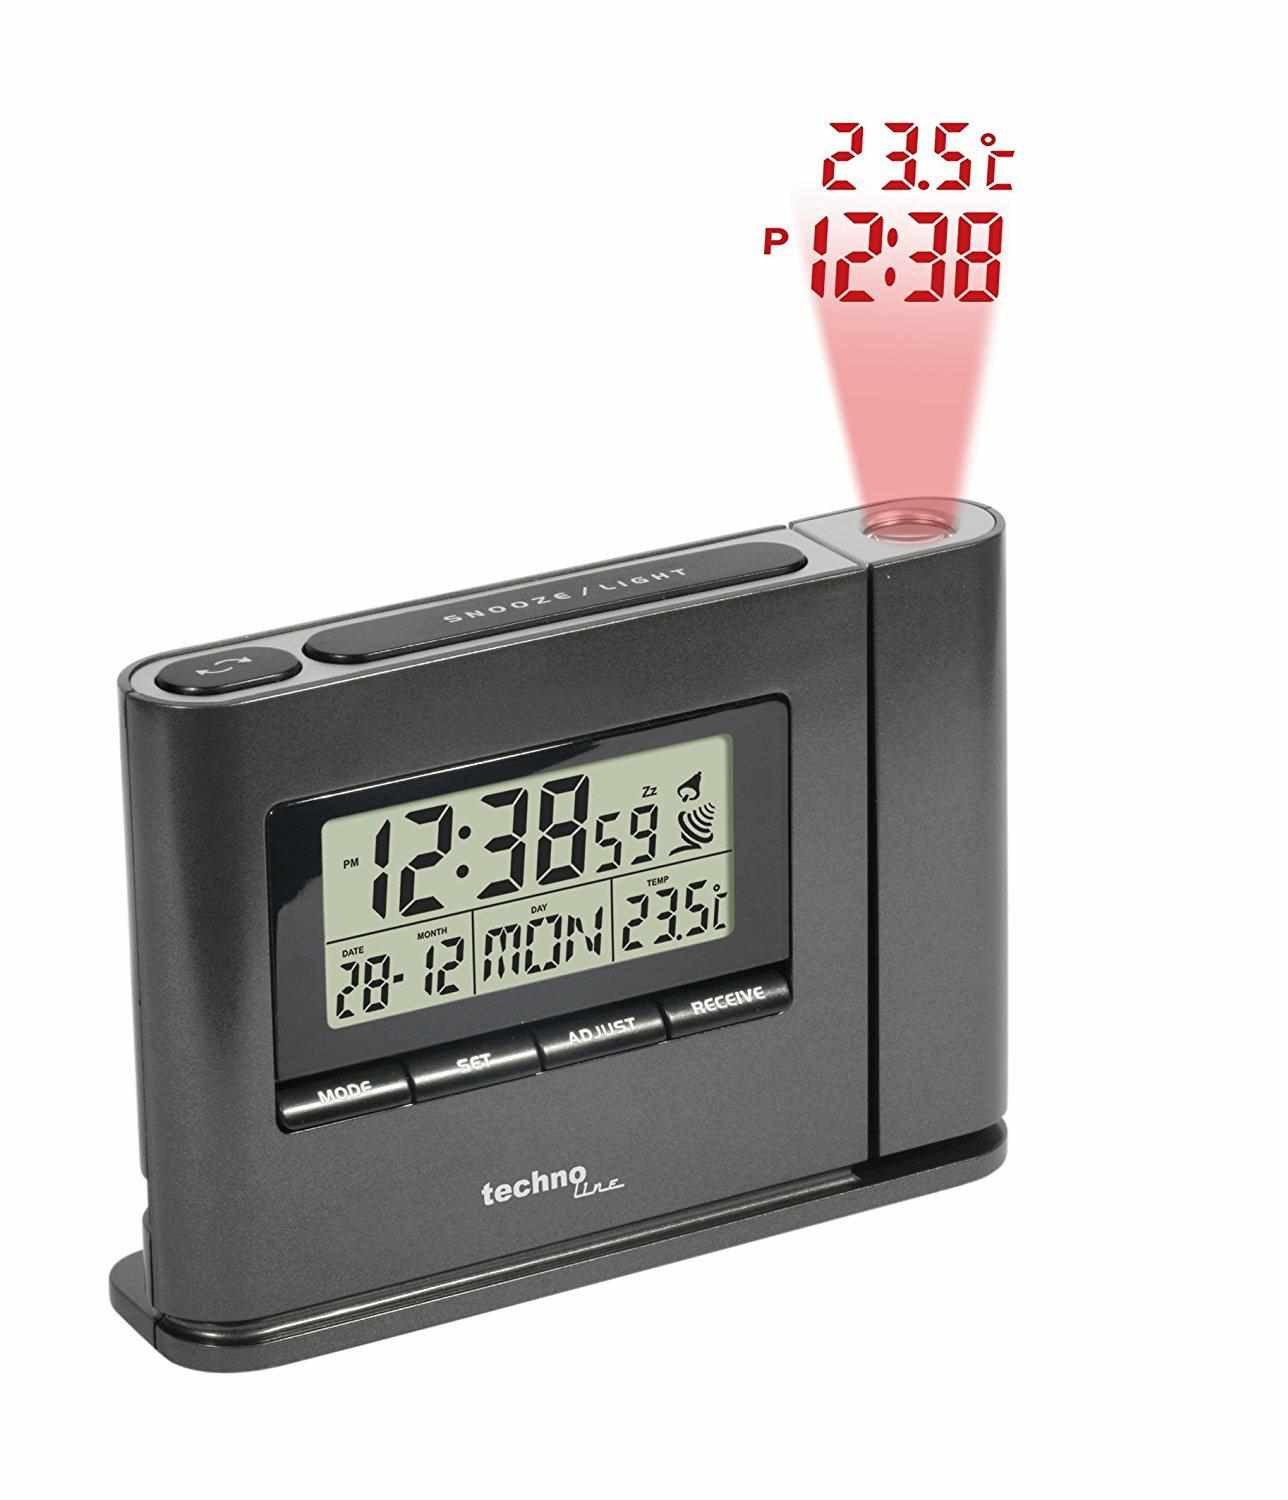 TechnoLine WT 519 - ceas cu alarmă digital cu proiecție a timpului și a temperaturii interioare